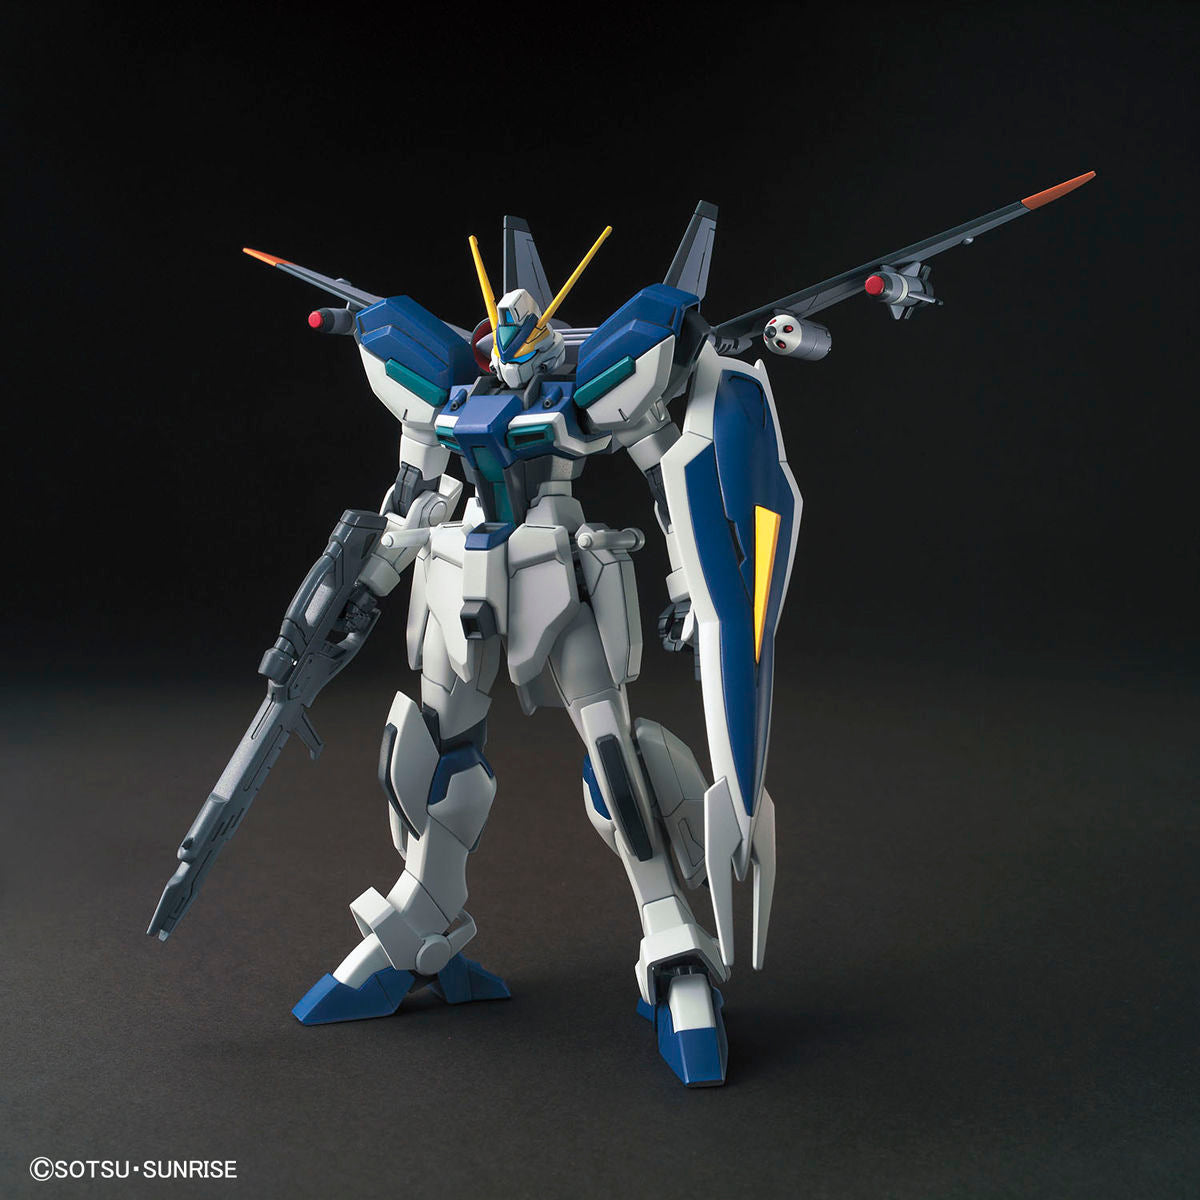 HG Gundam Windam 1/144 - gundam-store.dk